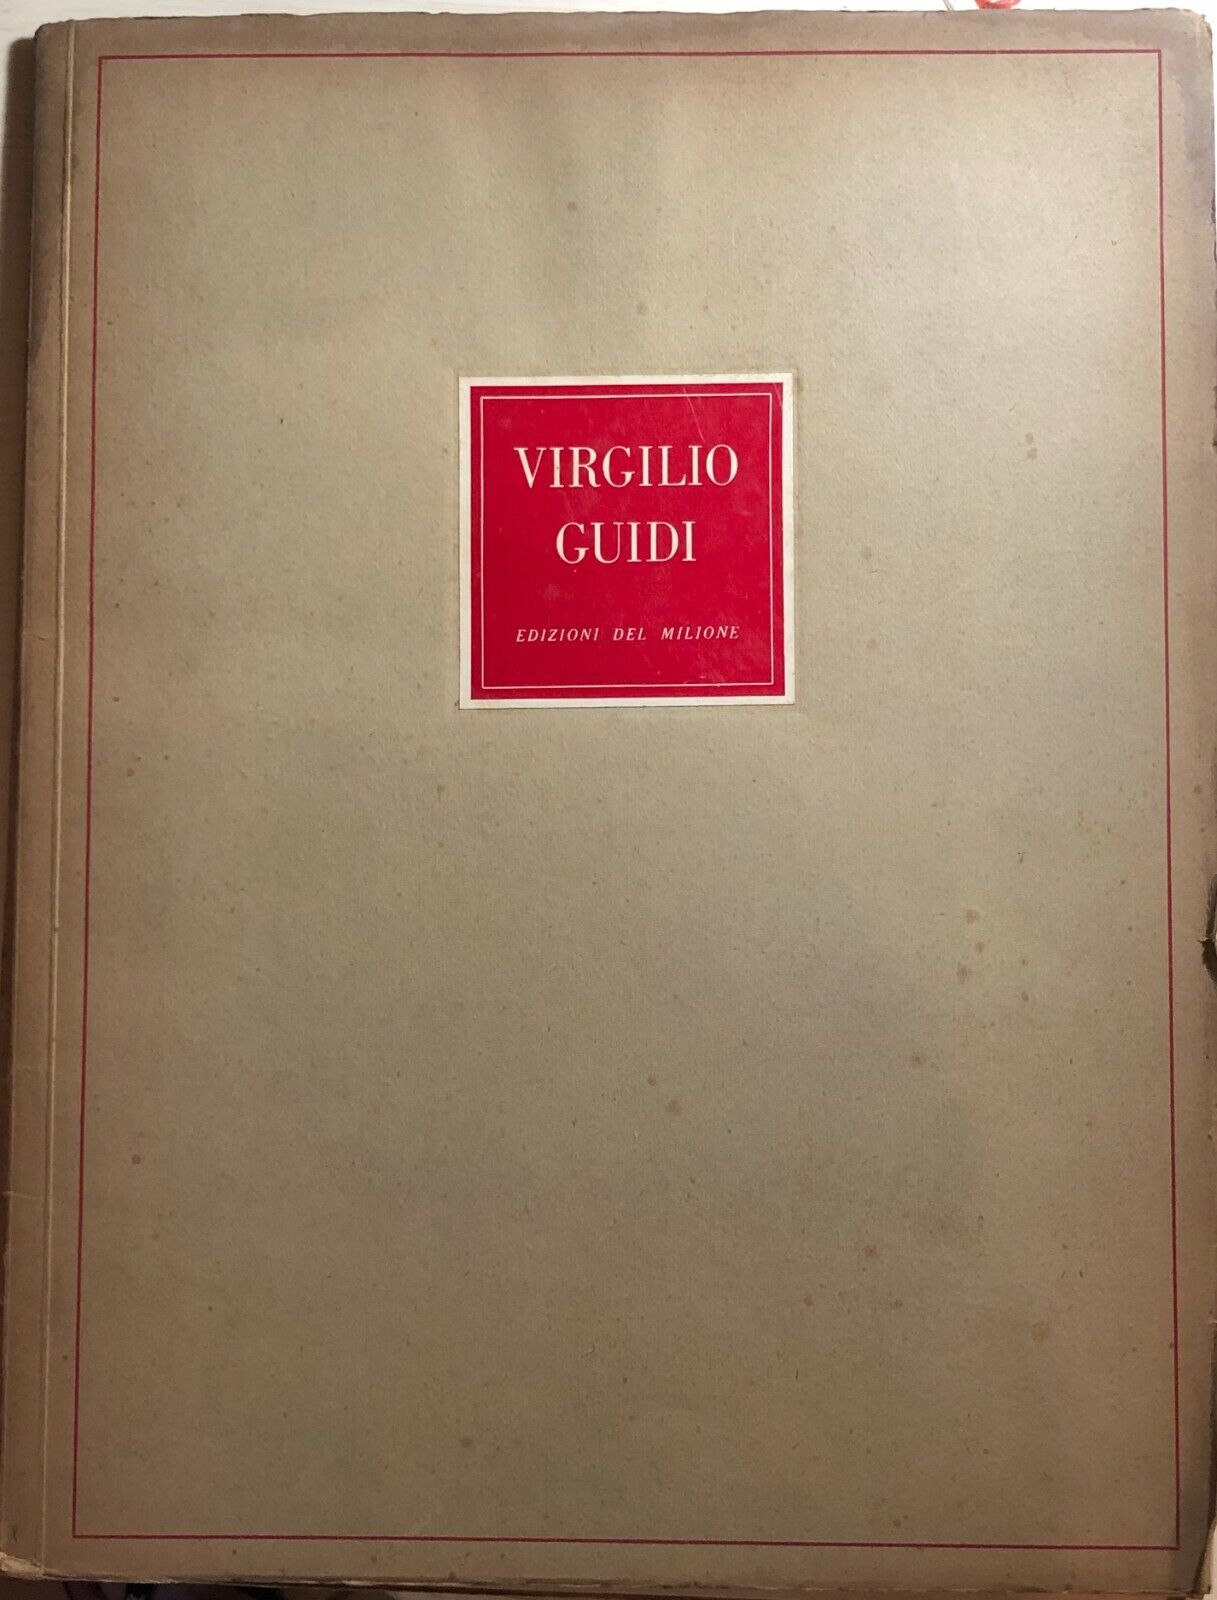 Virgilio Guidi di Alfonso Gatto,  1944,  Edizioni Del Milione Milano